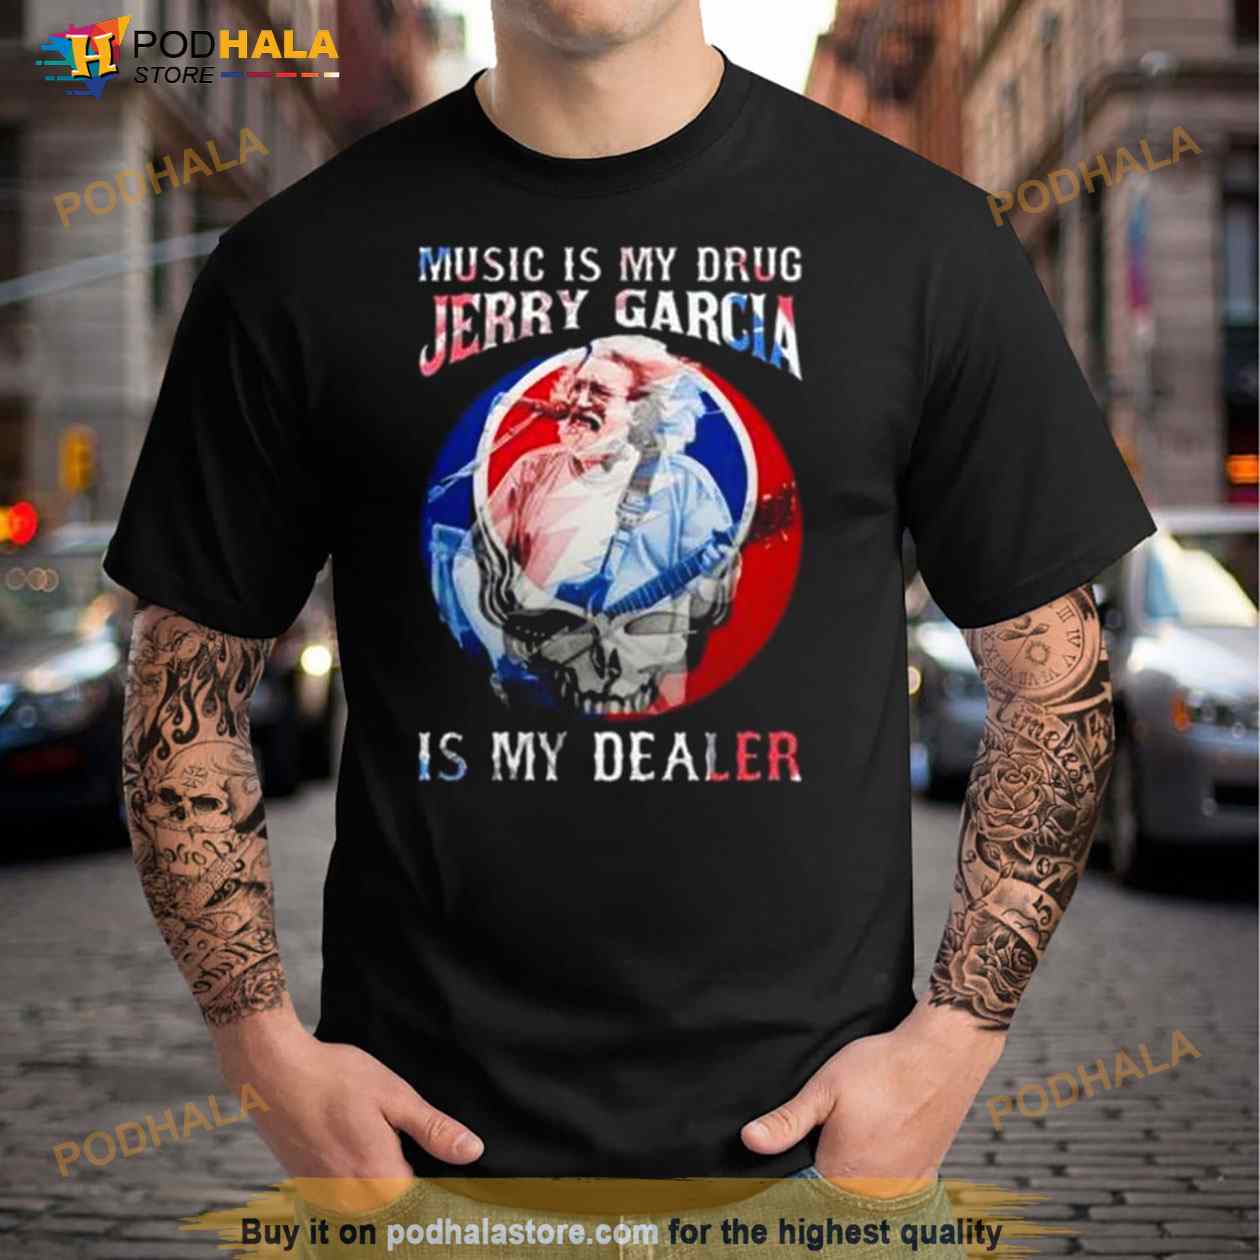 Grateful Dead T Shirt, Jerry Garcia T Shirt